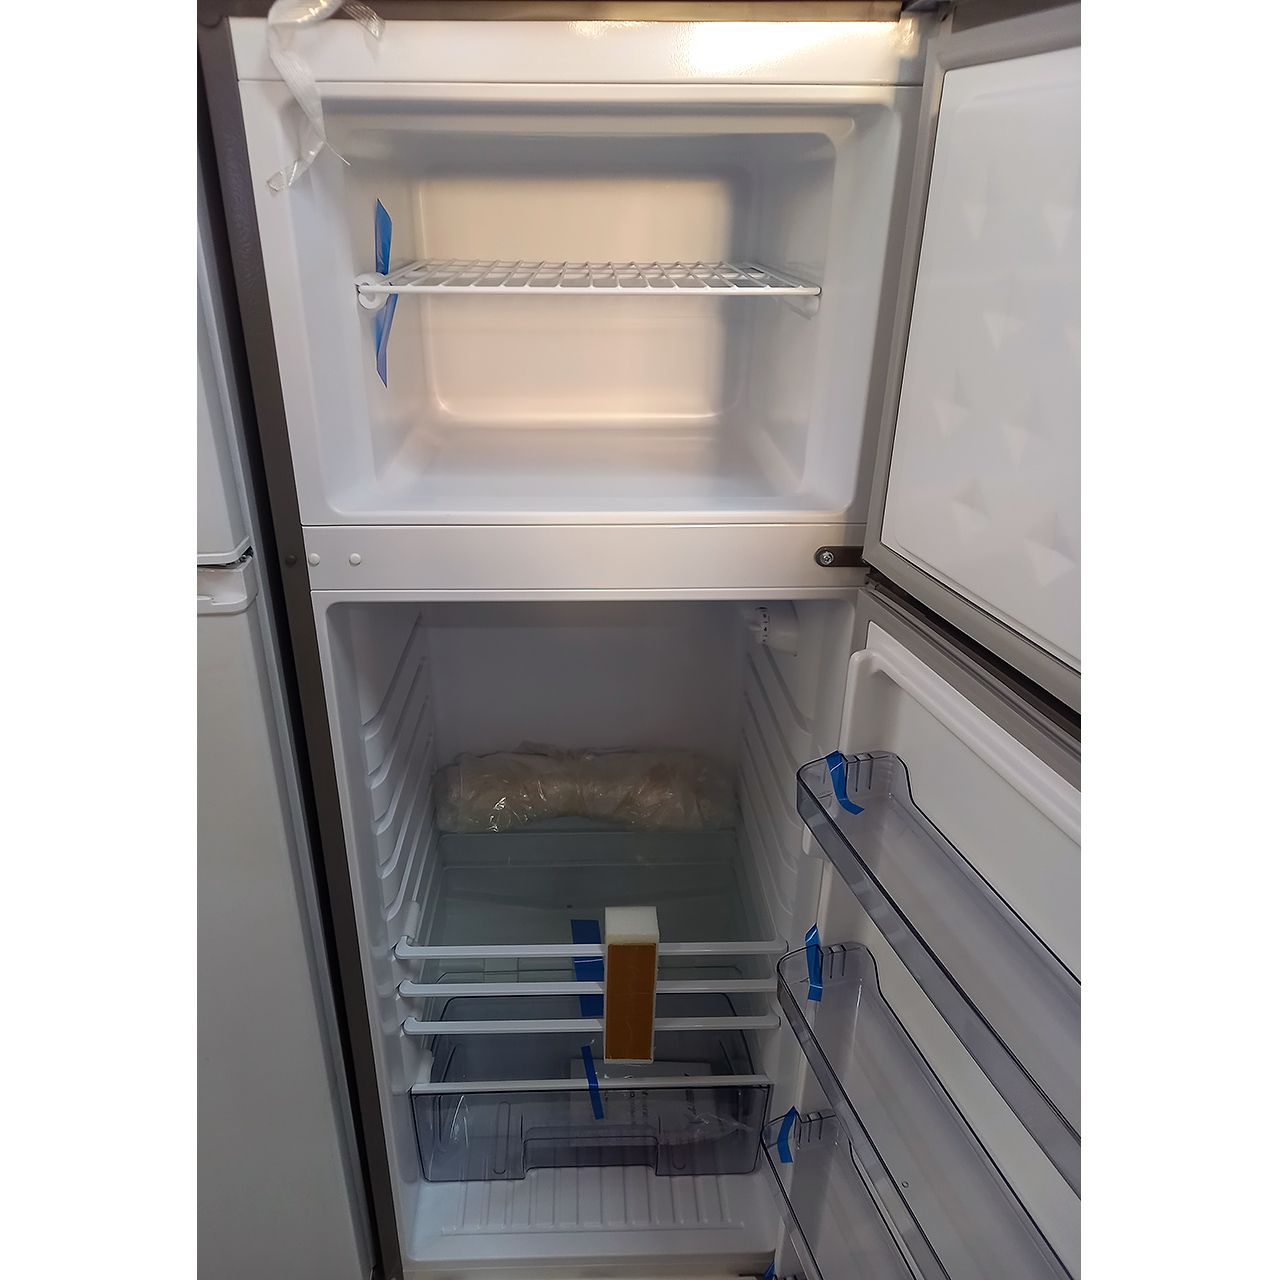 Холодильник двухкамерный Avest 230 литров